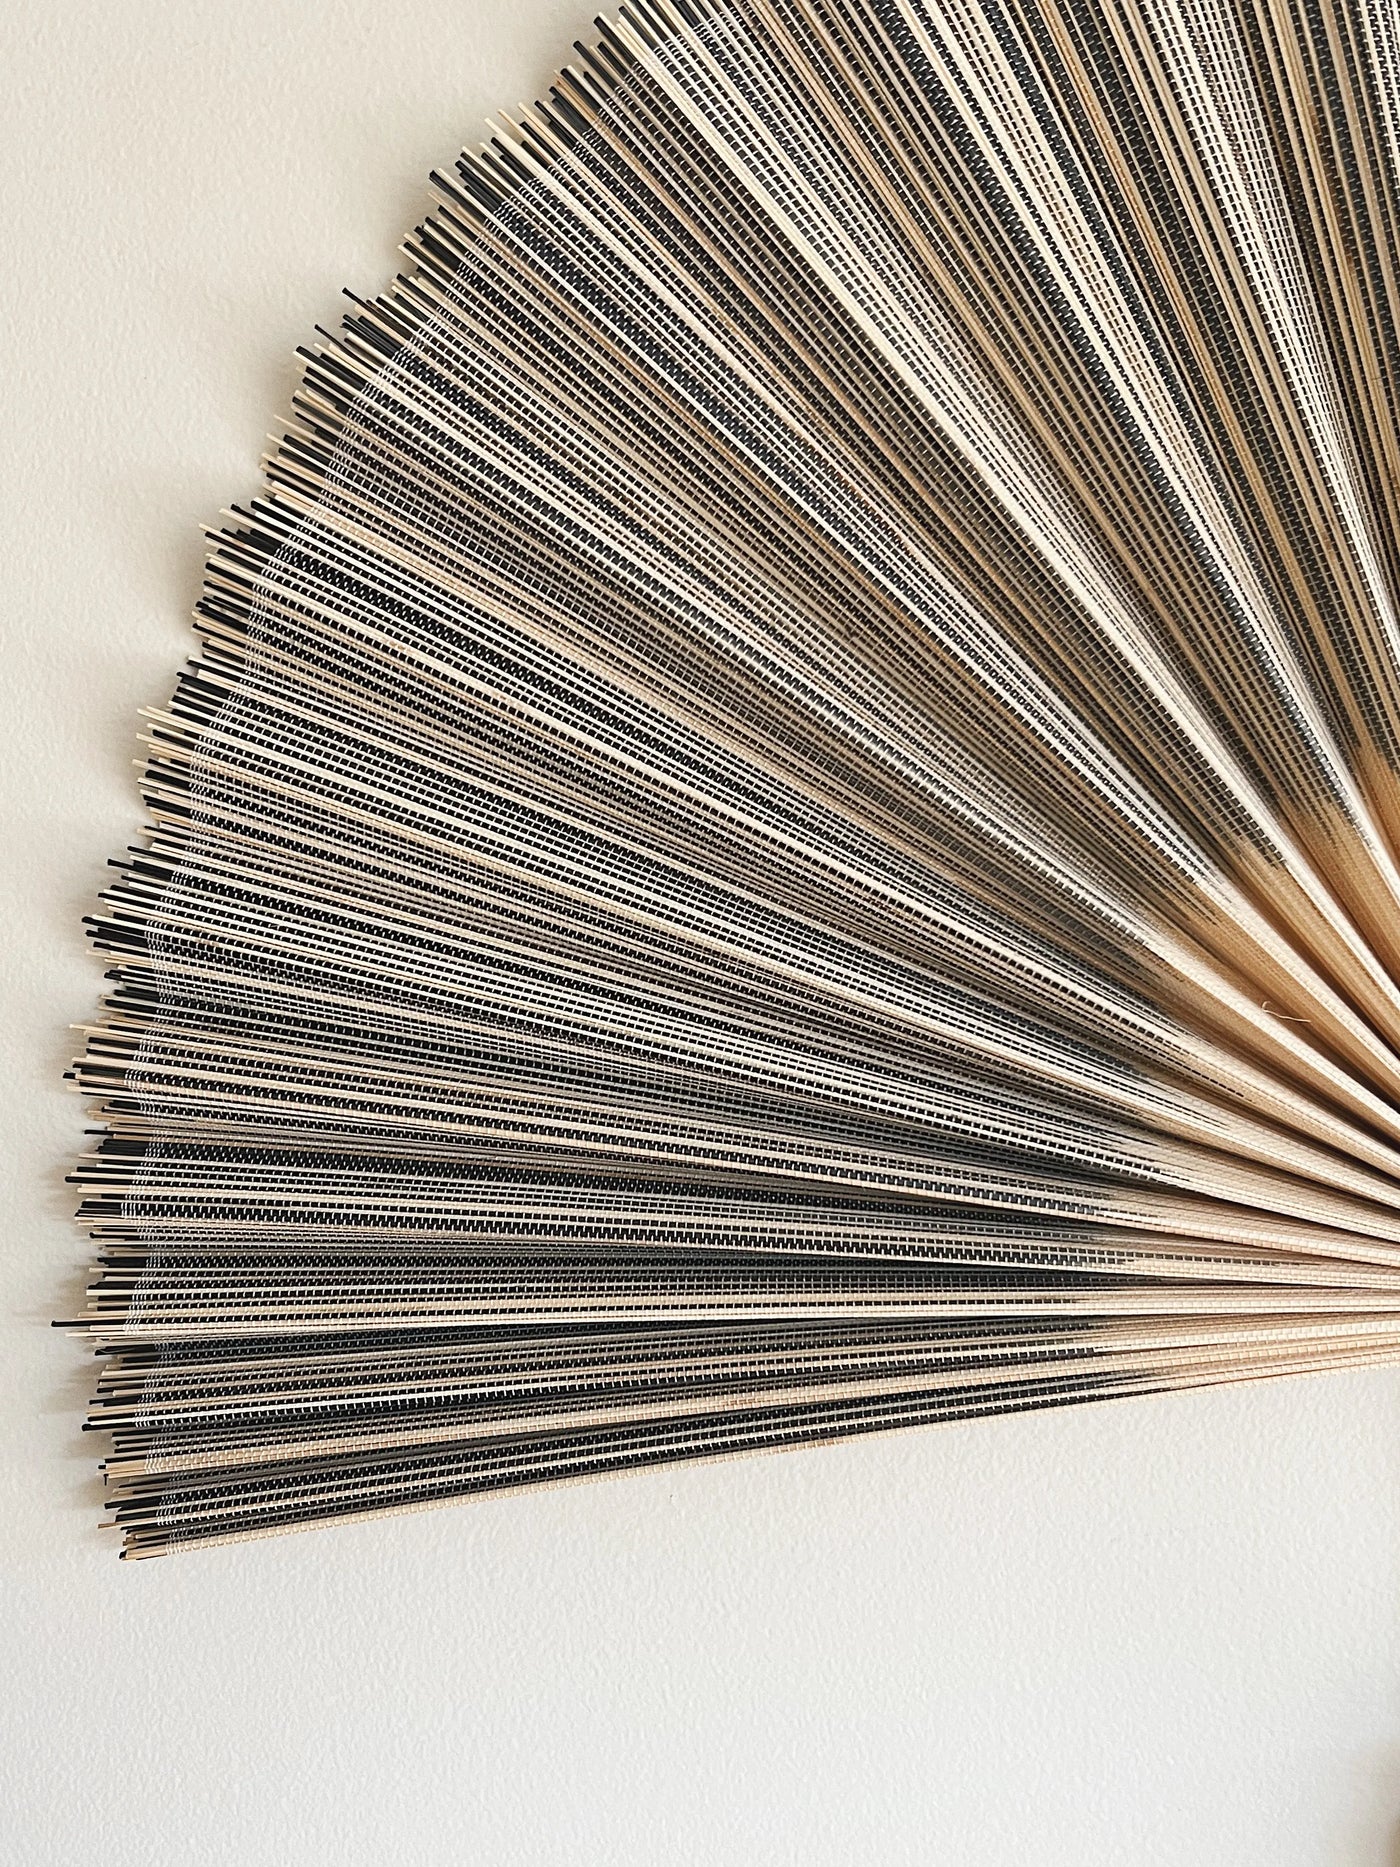 Håndlavet bambusvifte fra Vietnam | Blå/grå og natur en stor stribe - 2 størrelser Studio Hafnia